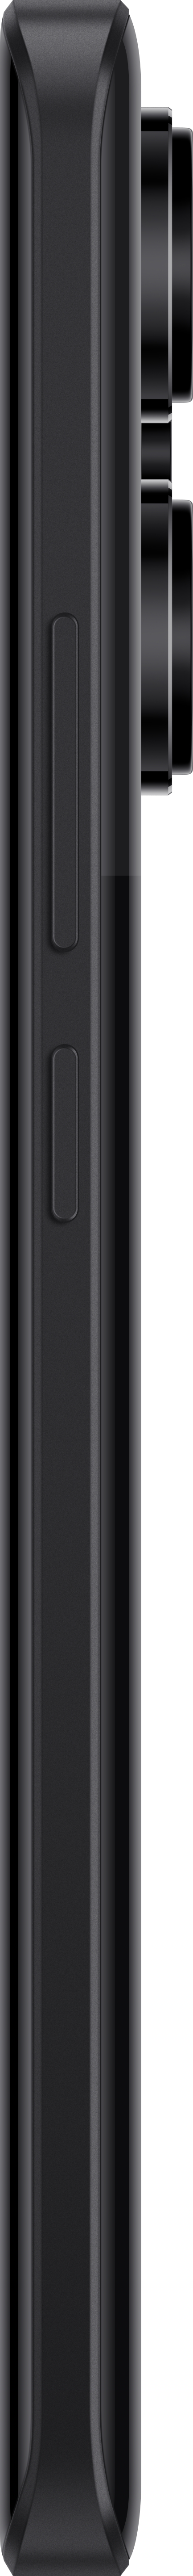 XIAOMI Redmi Note 13 Pro+ 5G SIM Dual 512 Midnight Black GB